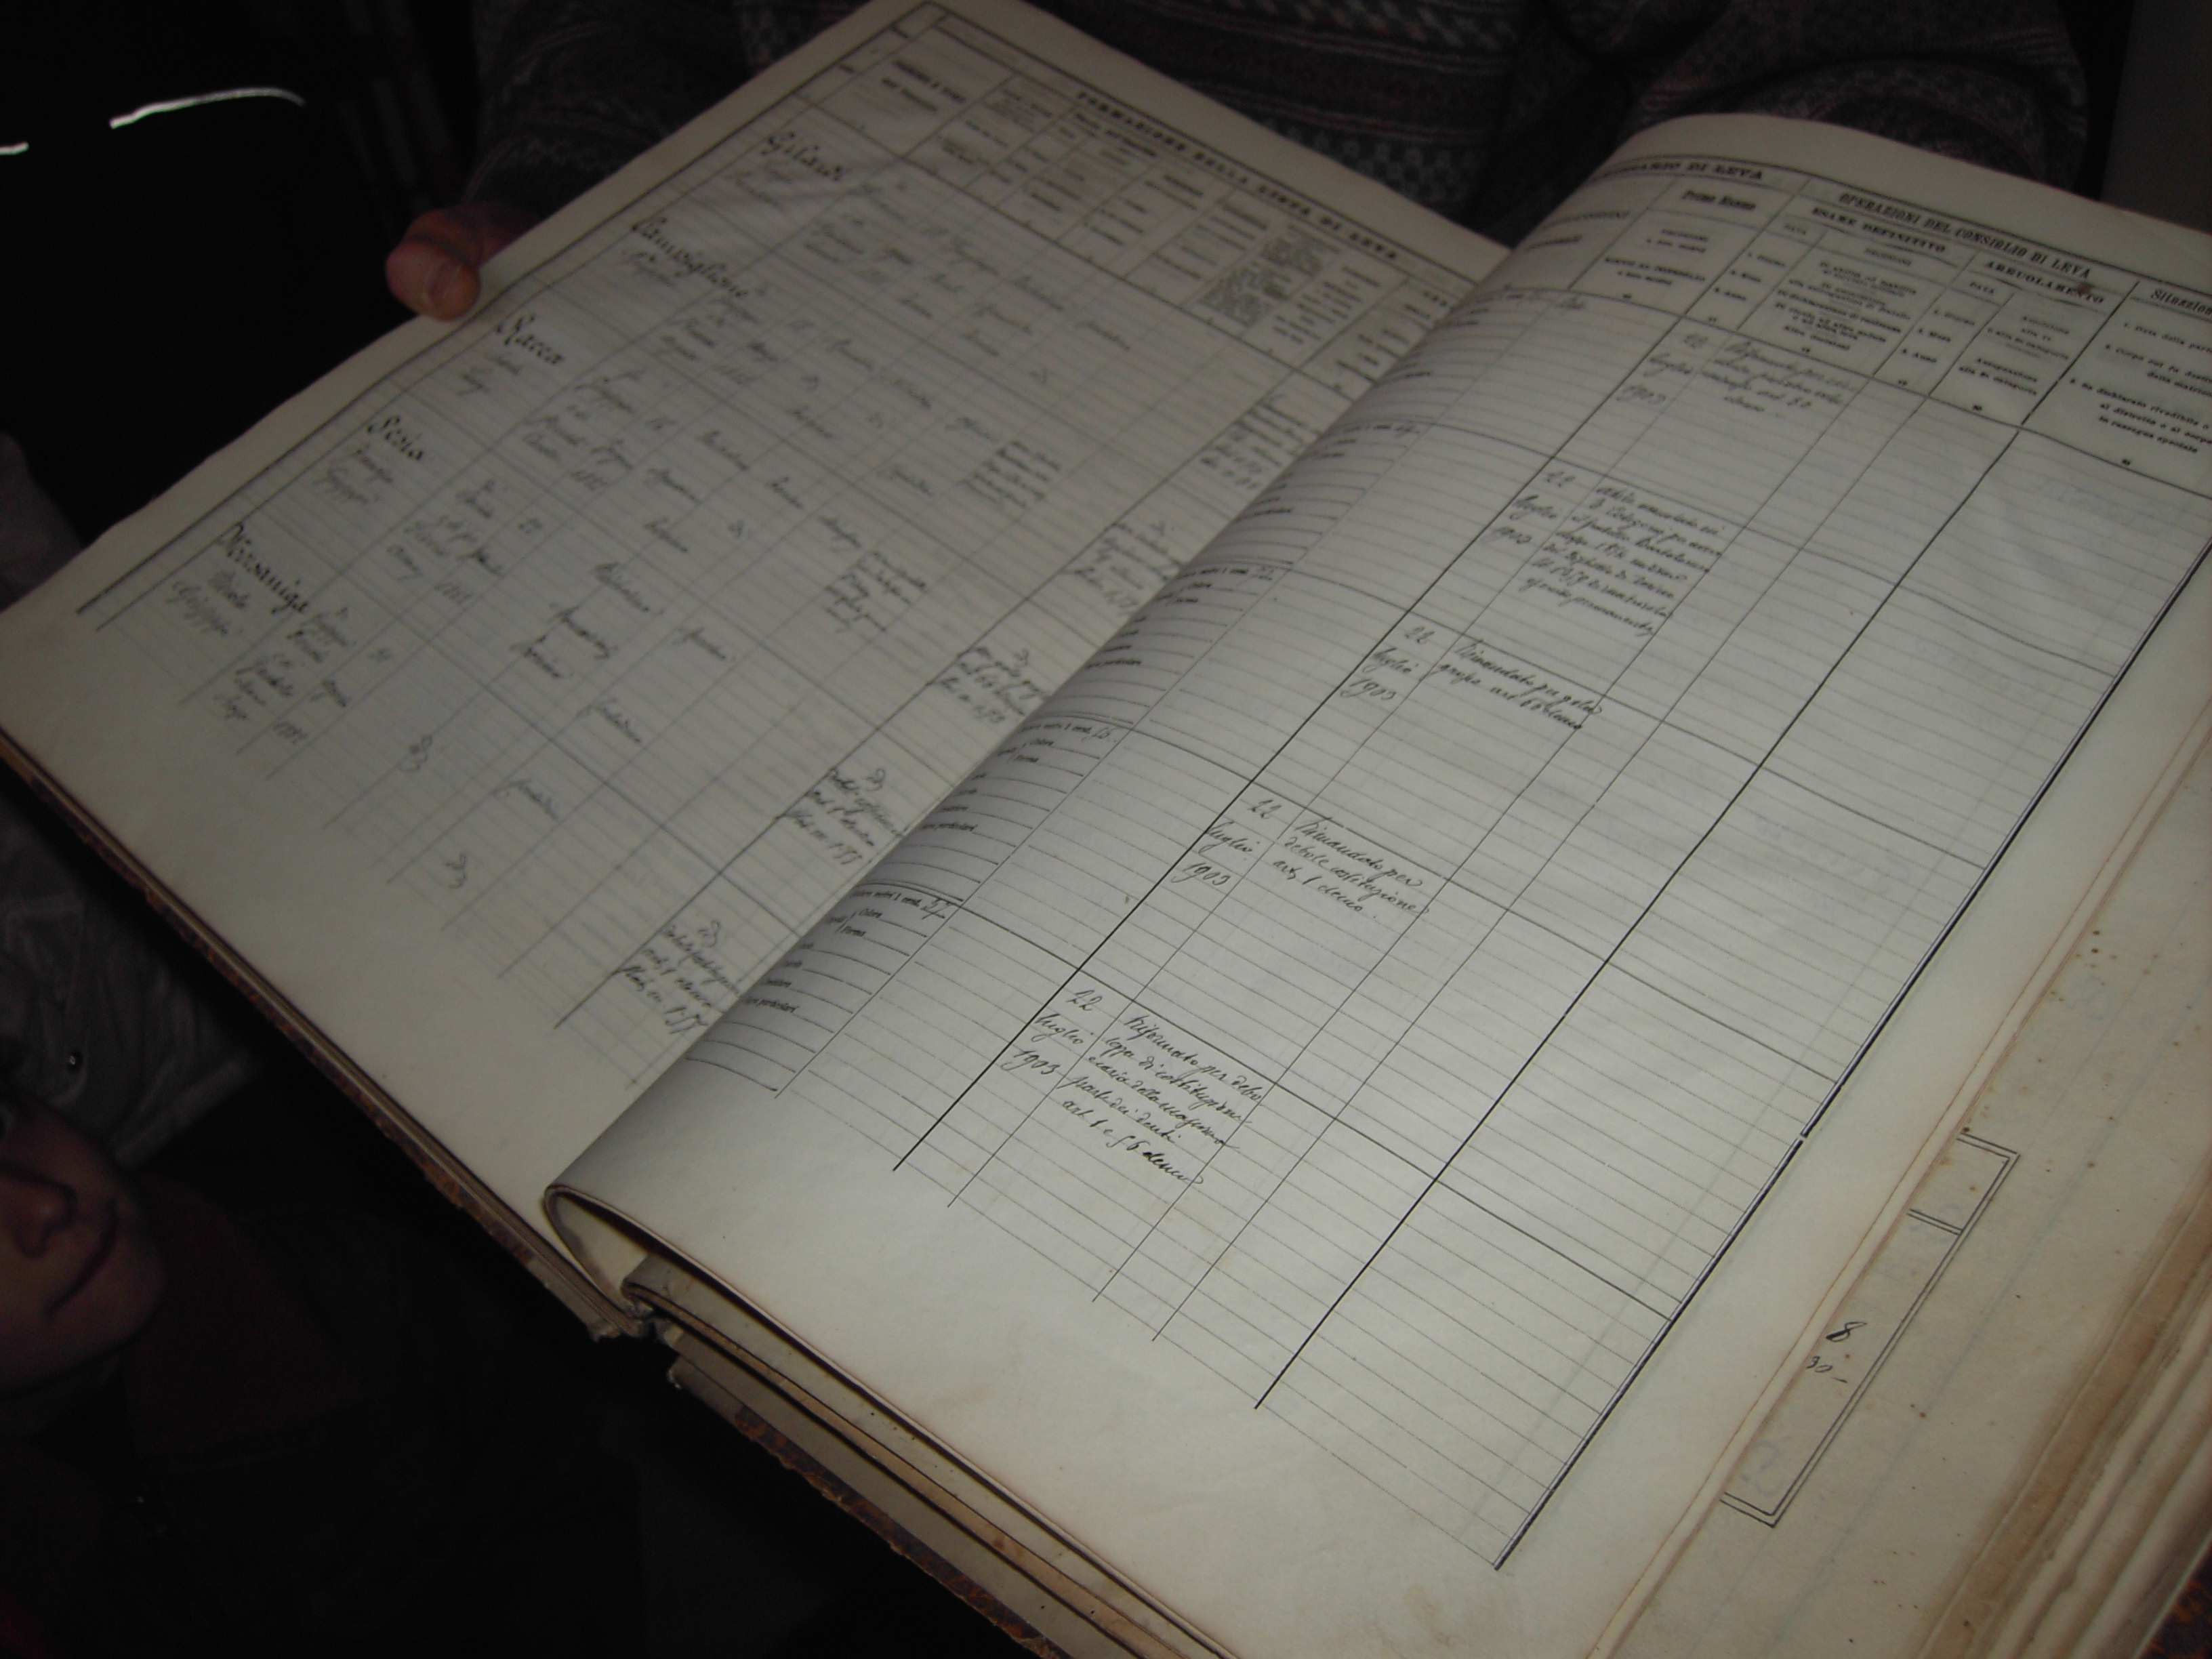 Il dottor Costantino ci ha fatto vedere uno dei REGISTRI ANTICHI dell archivio, che contiene i dati dei bambini nati nel 1901 e che avrebbero fatto in quell